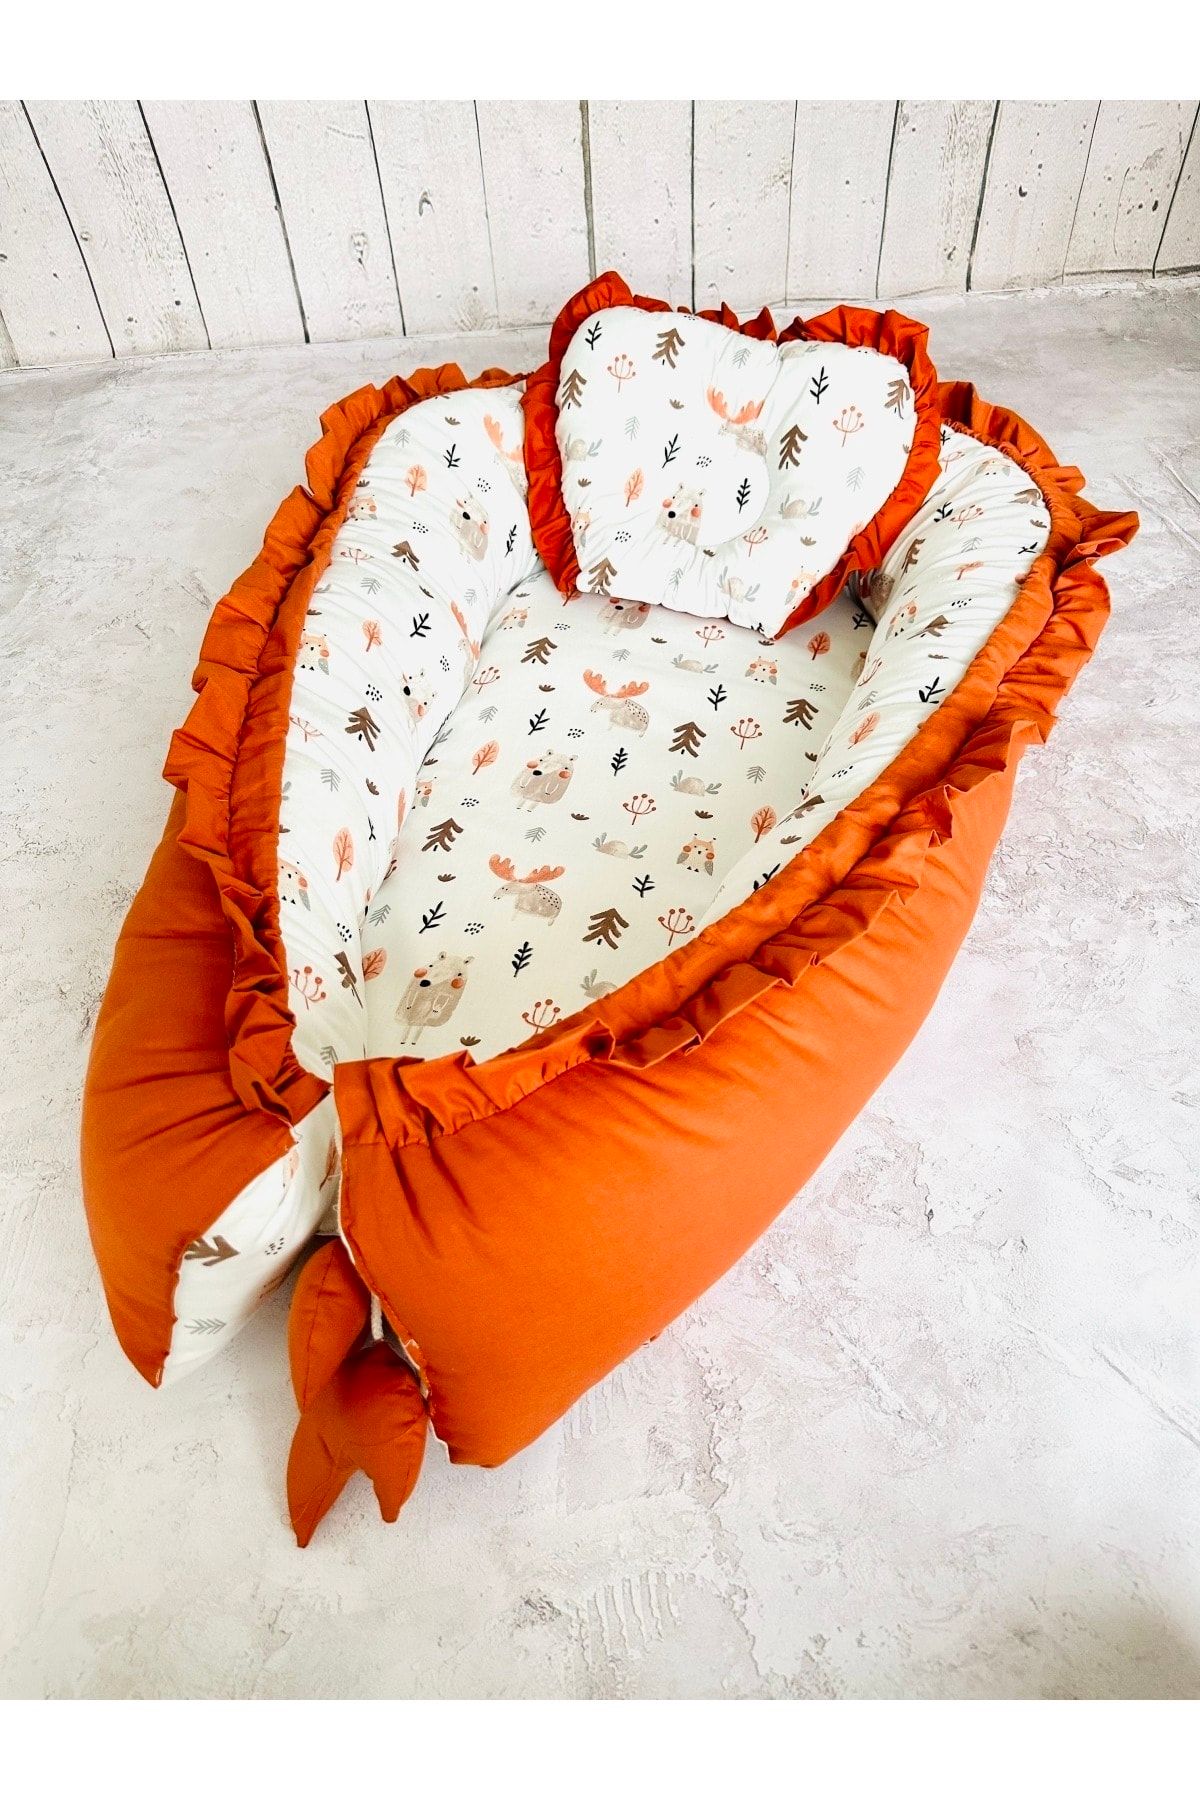 JUNİPERUS Baby Nest Sevimli Fırfırlı Ortopedik Çift Taraflı Bebek Yatağı Anne Yanı Bebek Yatağı